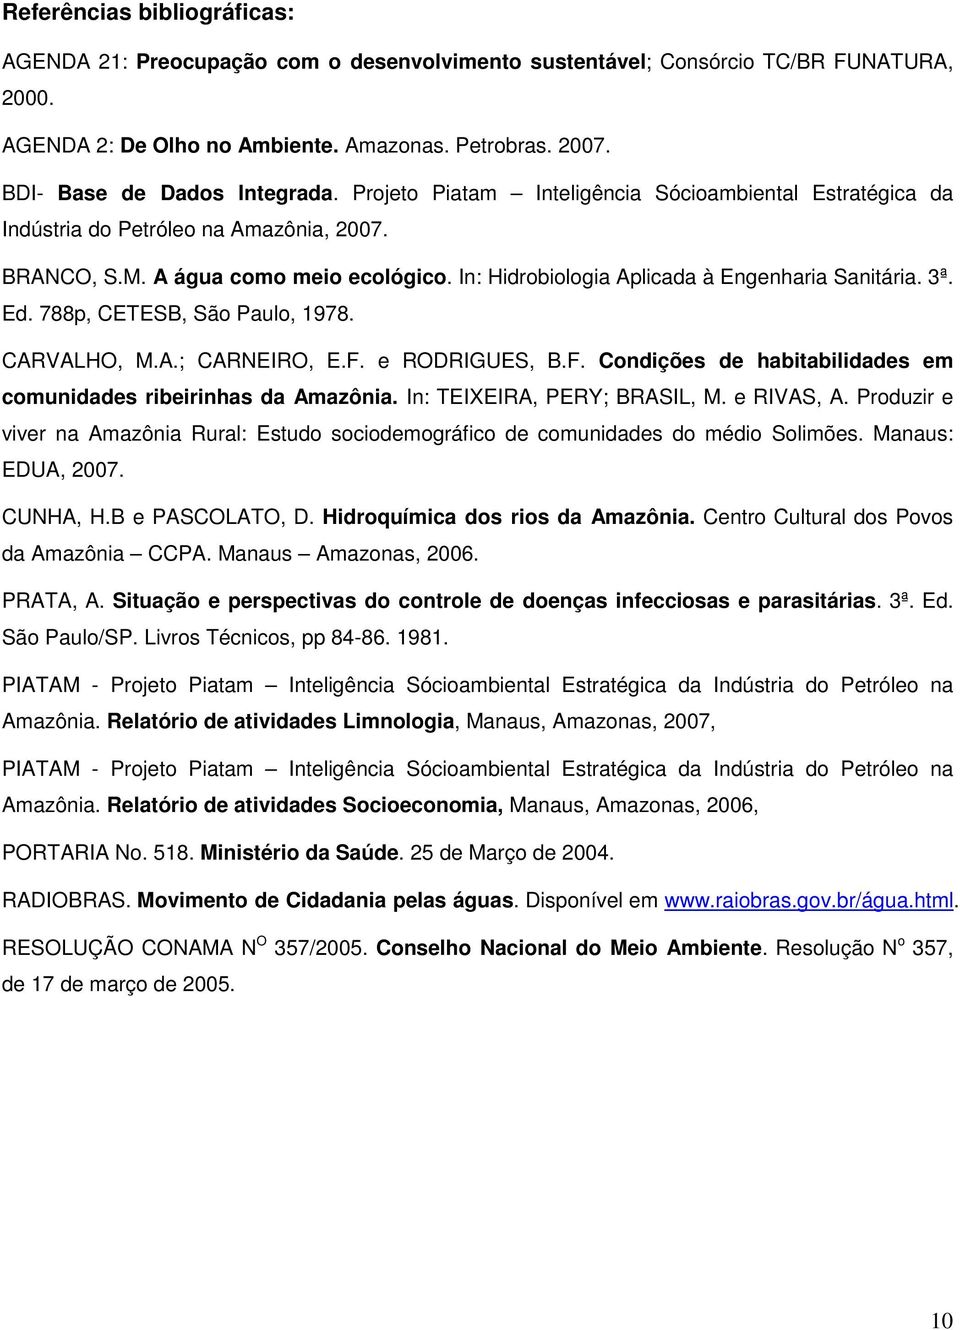 In: Hidrobiologia Aplicada à Engenharia Sanitária. 3ª. Ed. 788p, CETESB, São Paulo, 1978. CARVALHO, M.A.; CARNEIRO, E.F. e RODRIGUES, B.F. Condições de habitabilidades em comunidades ribeirinhas da Amazônia.